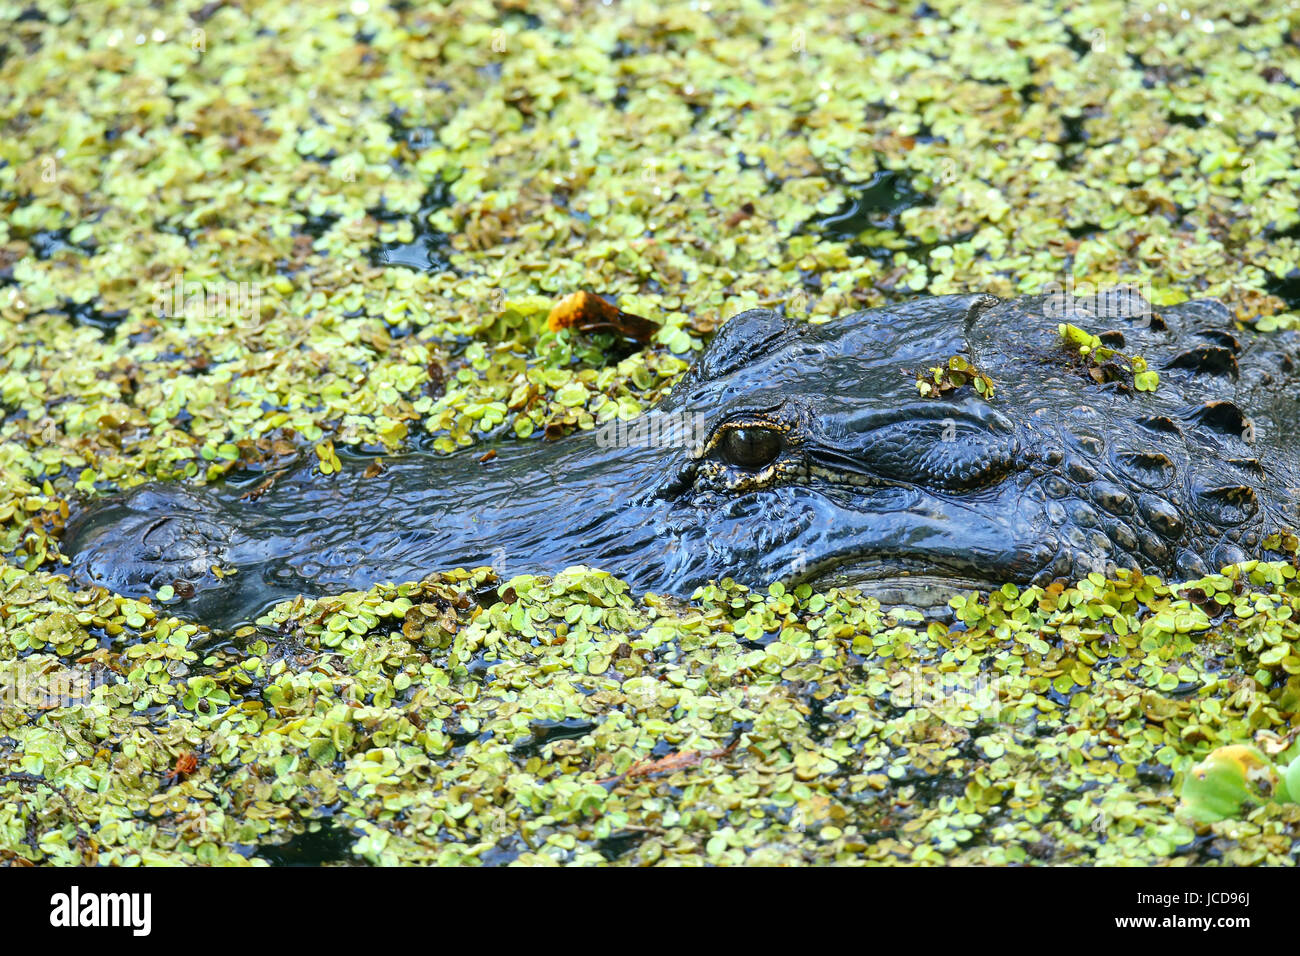 Portrait de Alligator Alligator mississippiensis () flottant dans un marais Banque D'Images